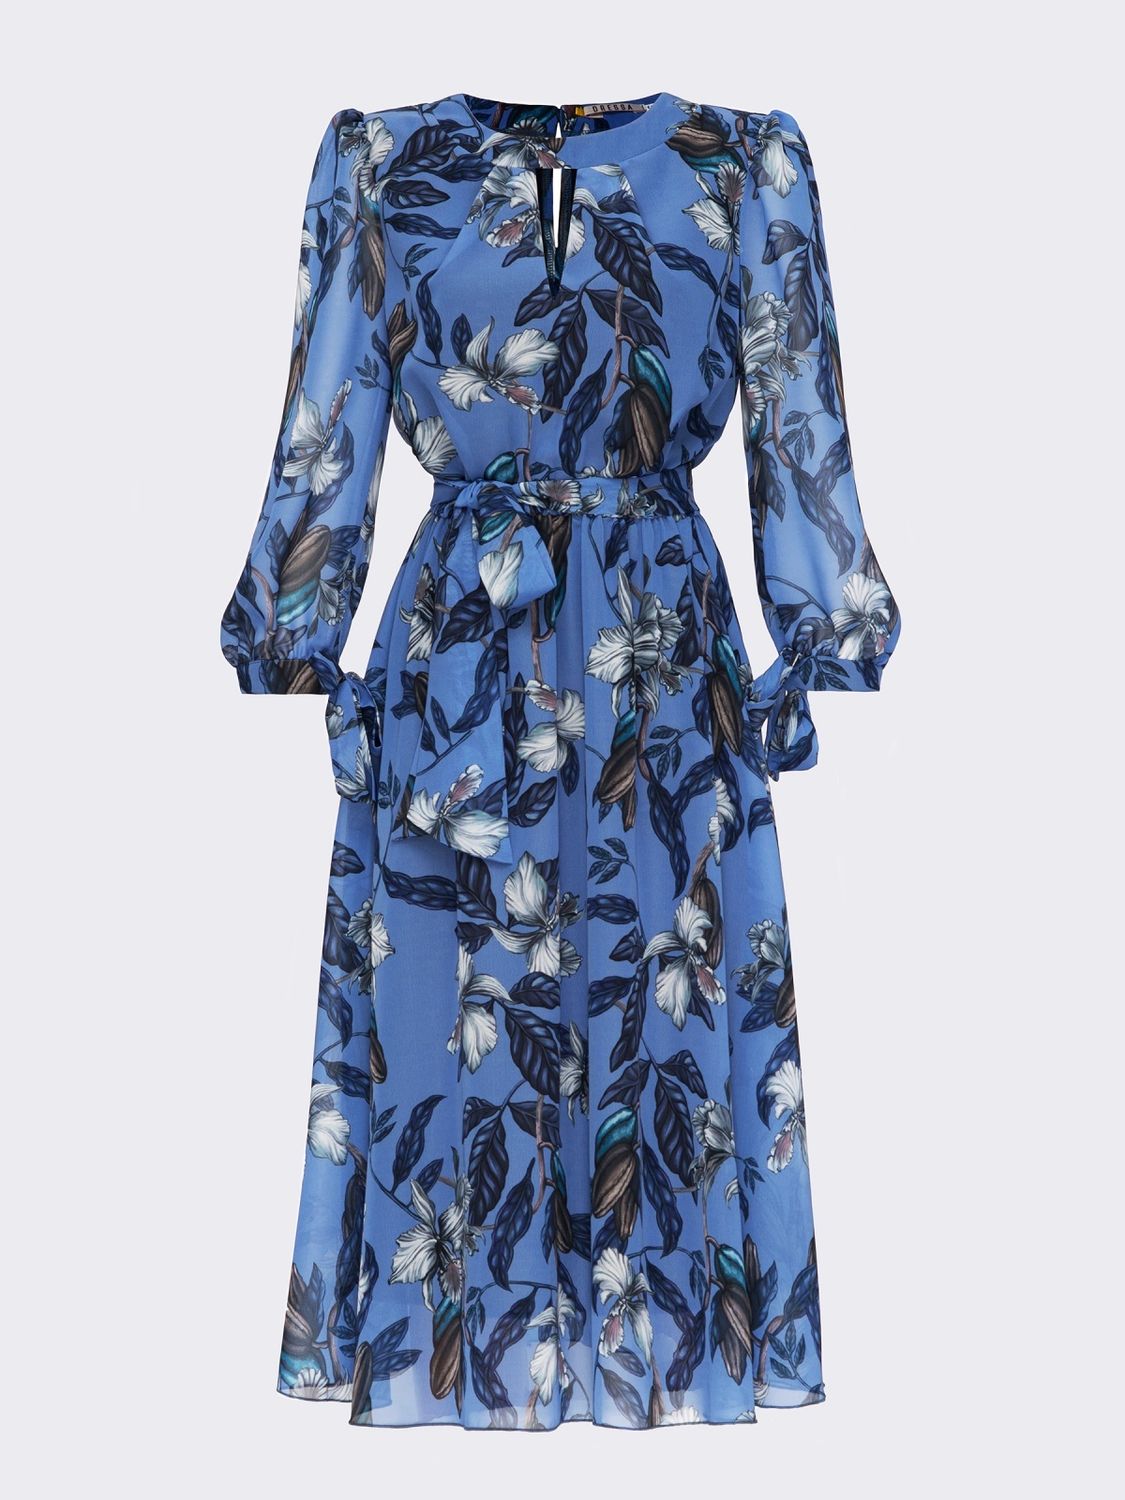 Шифонова сукня міді зі спідницею-сонце блакитна - фото